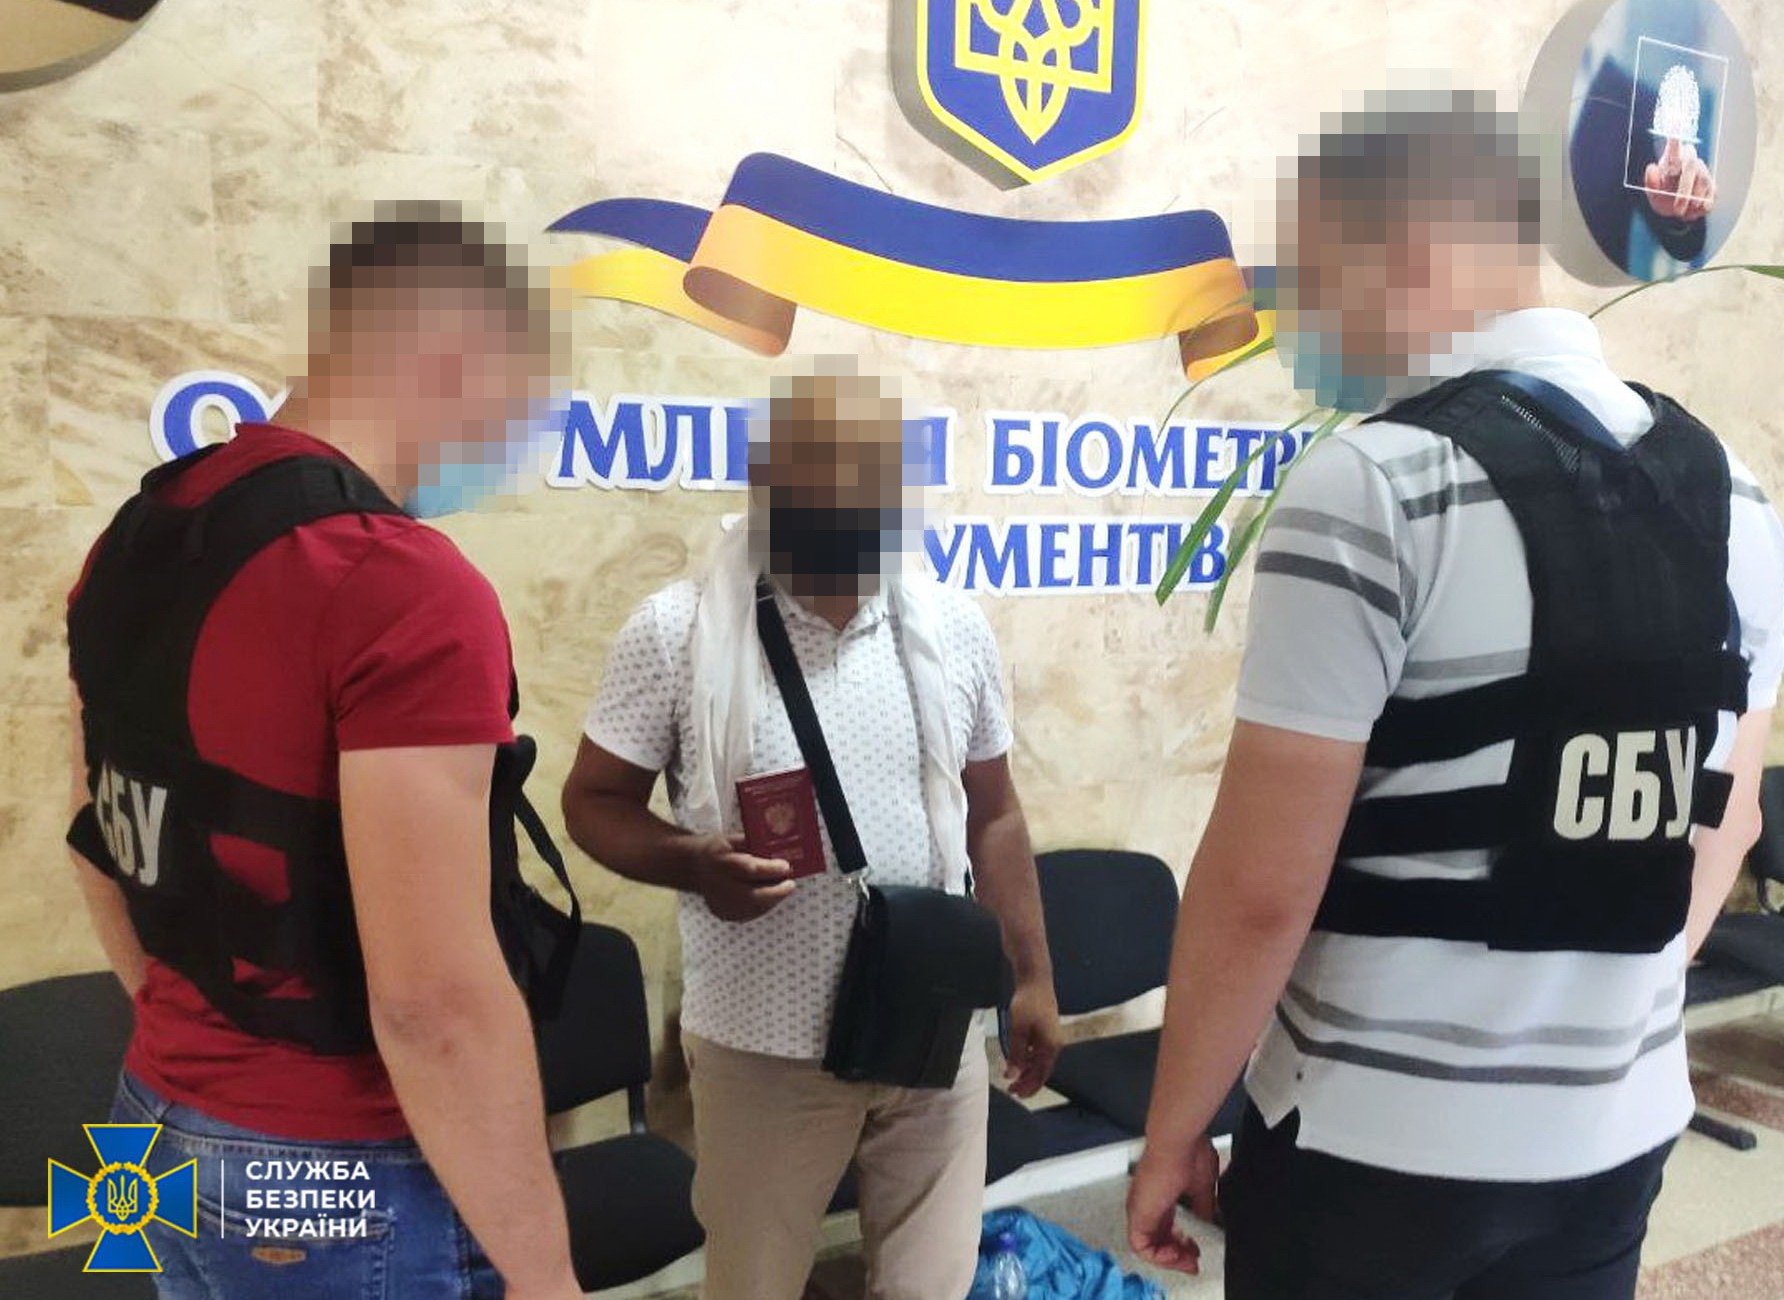 Разыскивал Интерпол: СБУ задержала террориста с российским паспортом